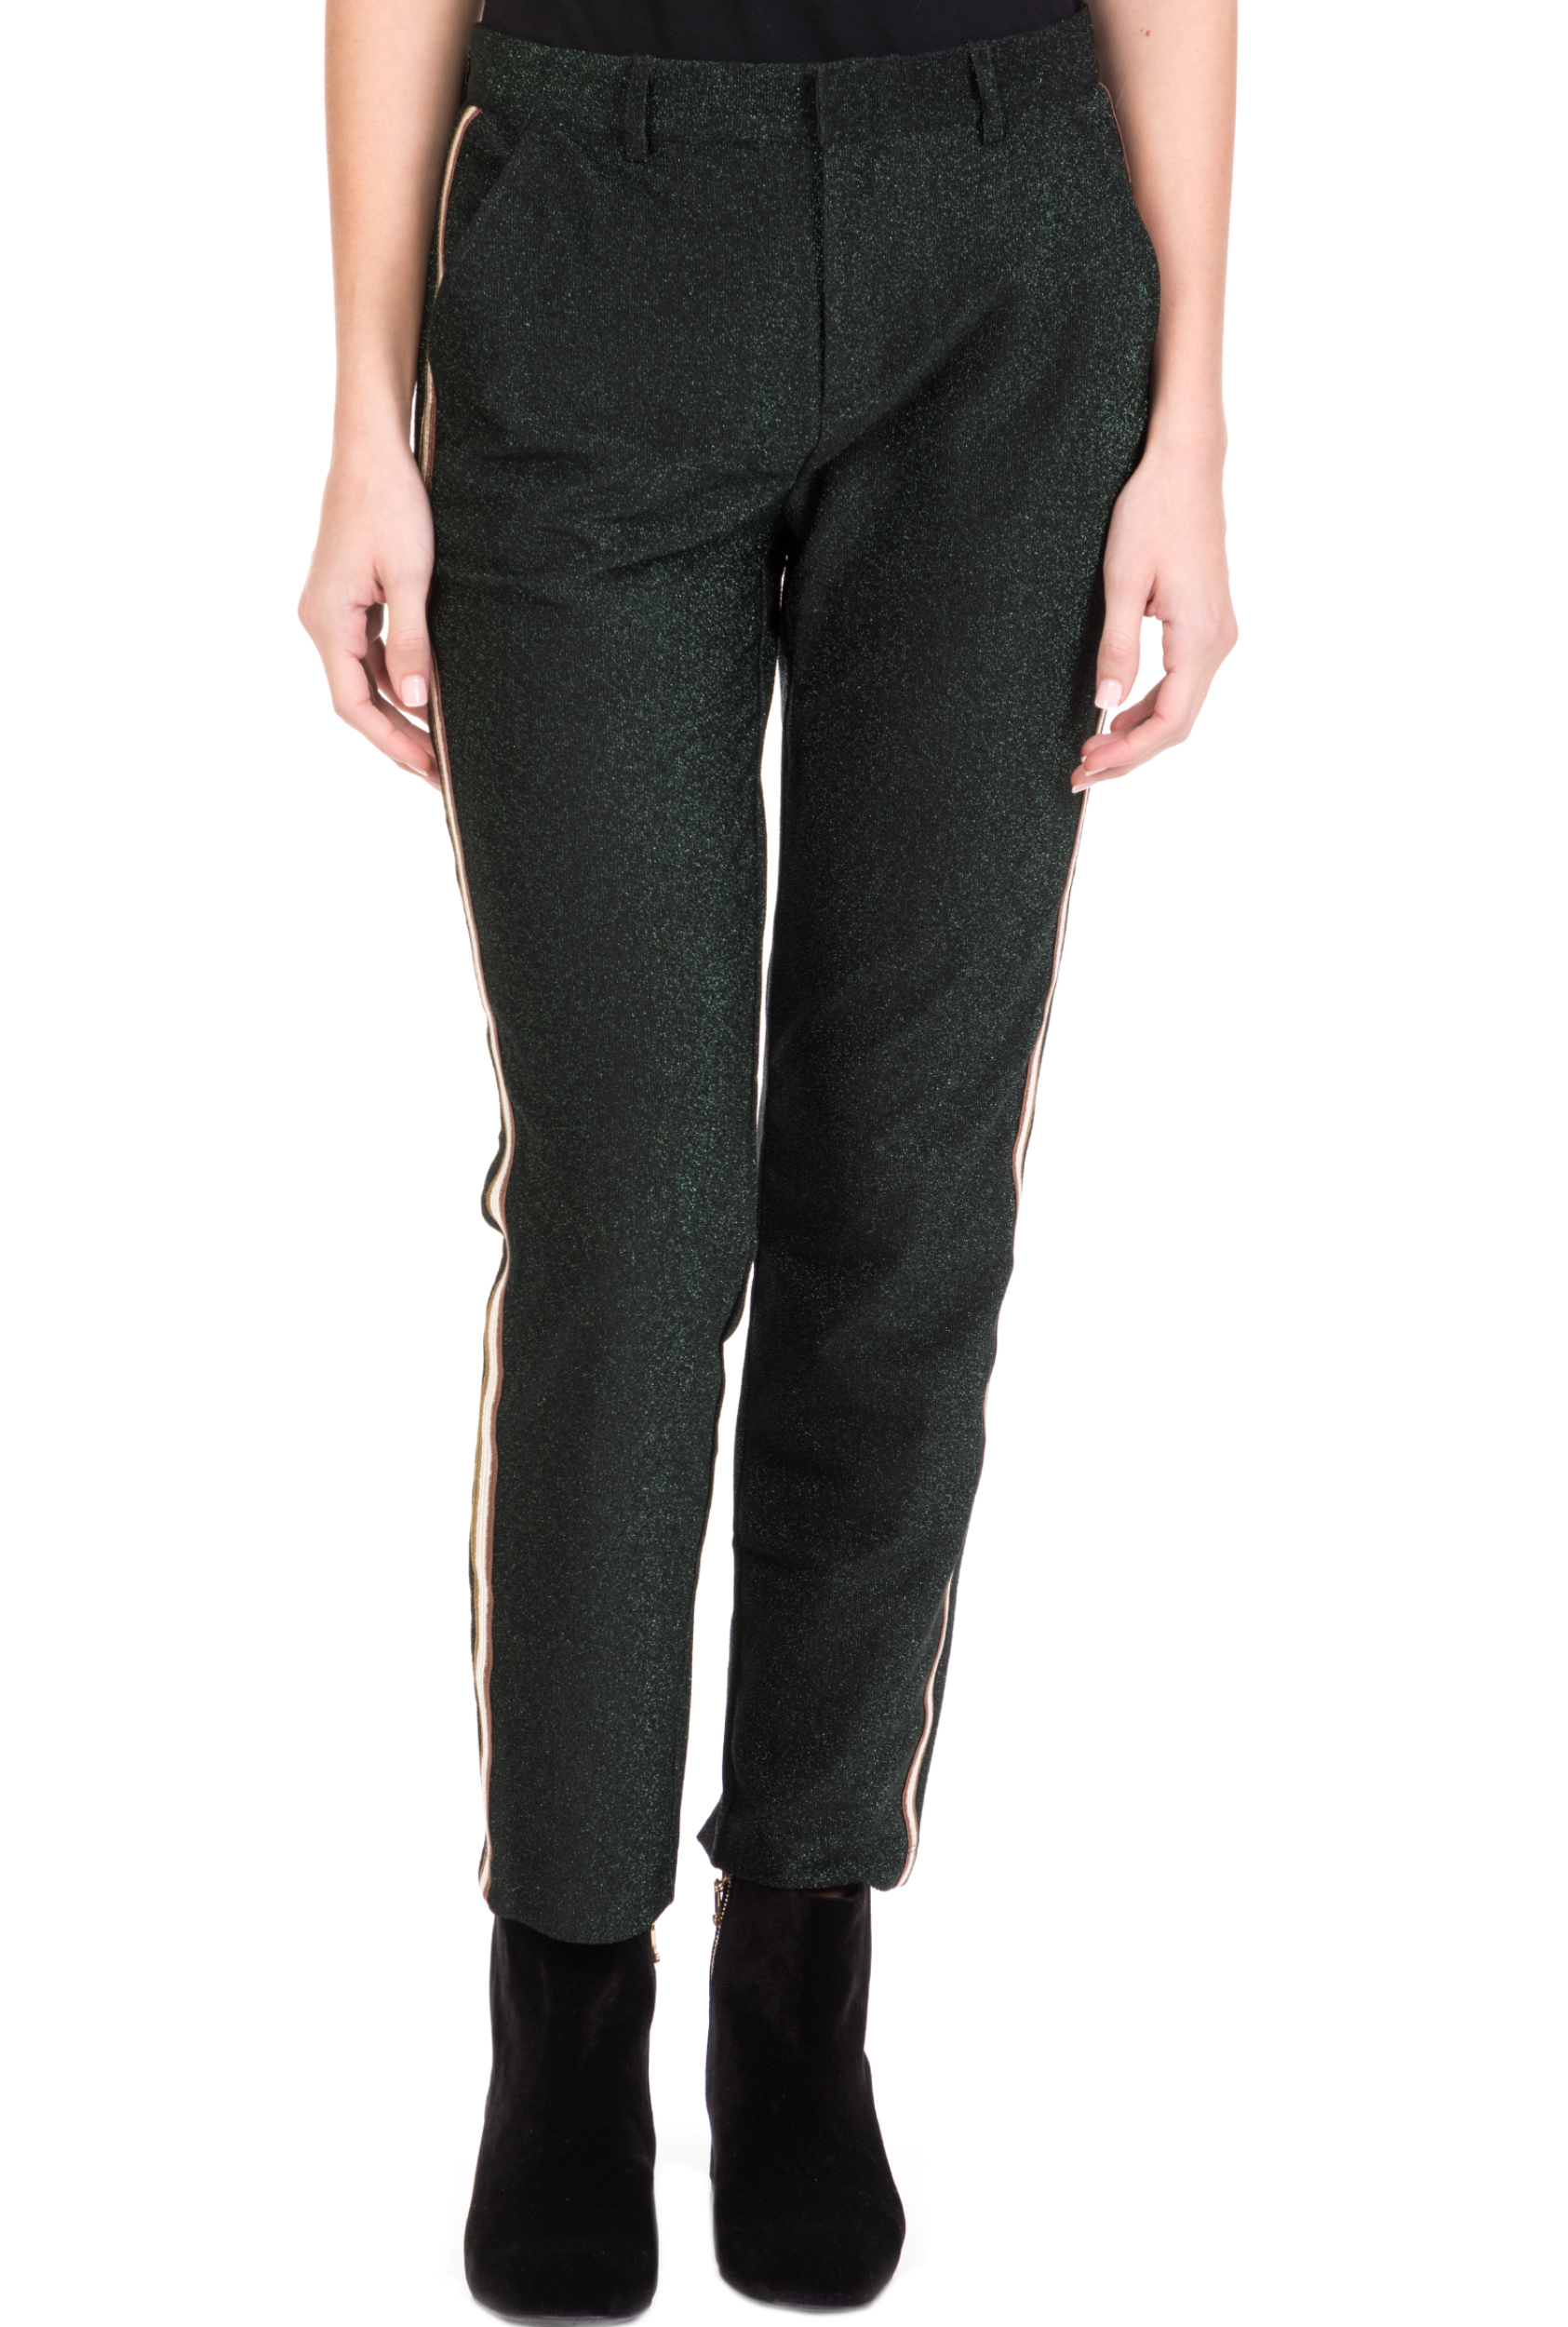 Γυναικεία/Ρούχα/Παντελόνια/Ισια Γραμμή SCOTCH & SODA - Γυναικείο παντελόνι SCOTCH & SODA lurex tailored πράσινο